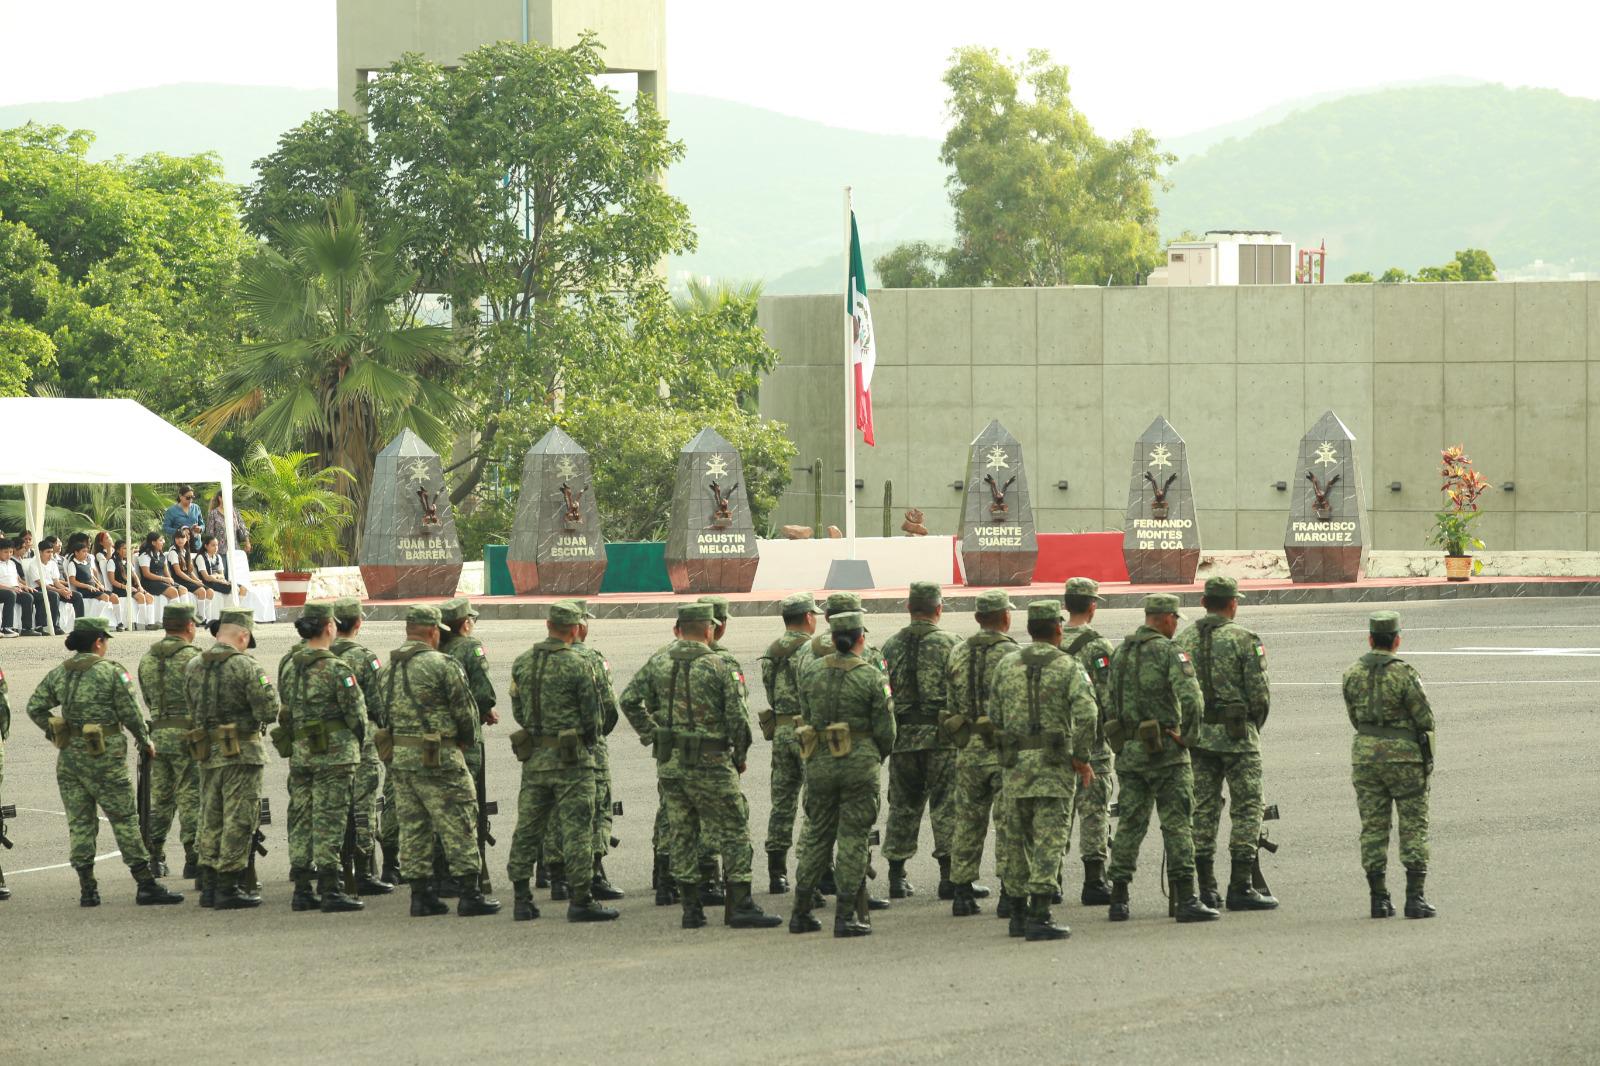 $!Inauguran hemiciclo para celebrar el Bicentenario del Heroico Colegio Militar